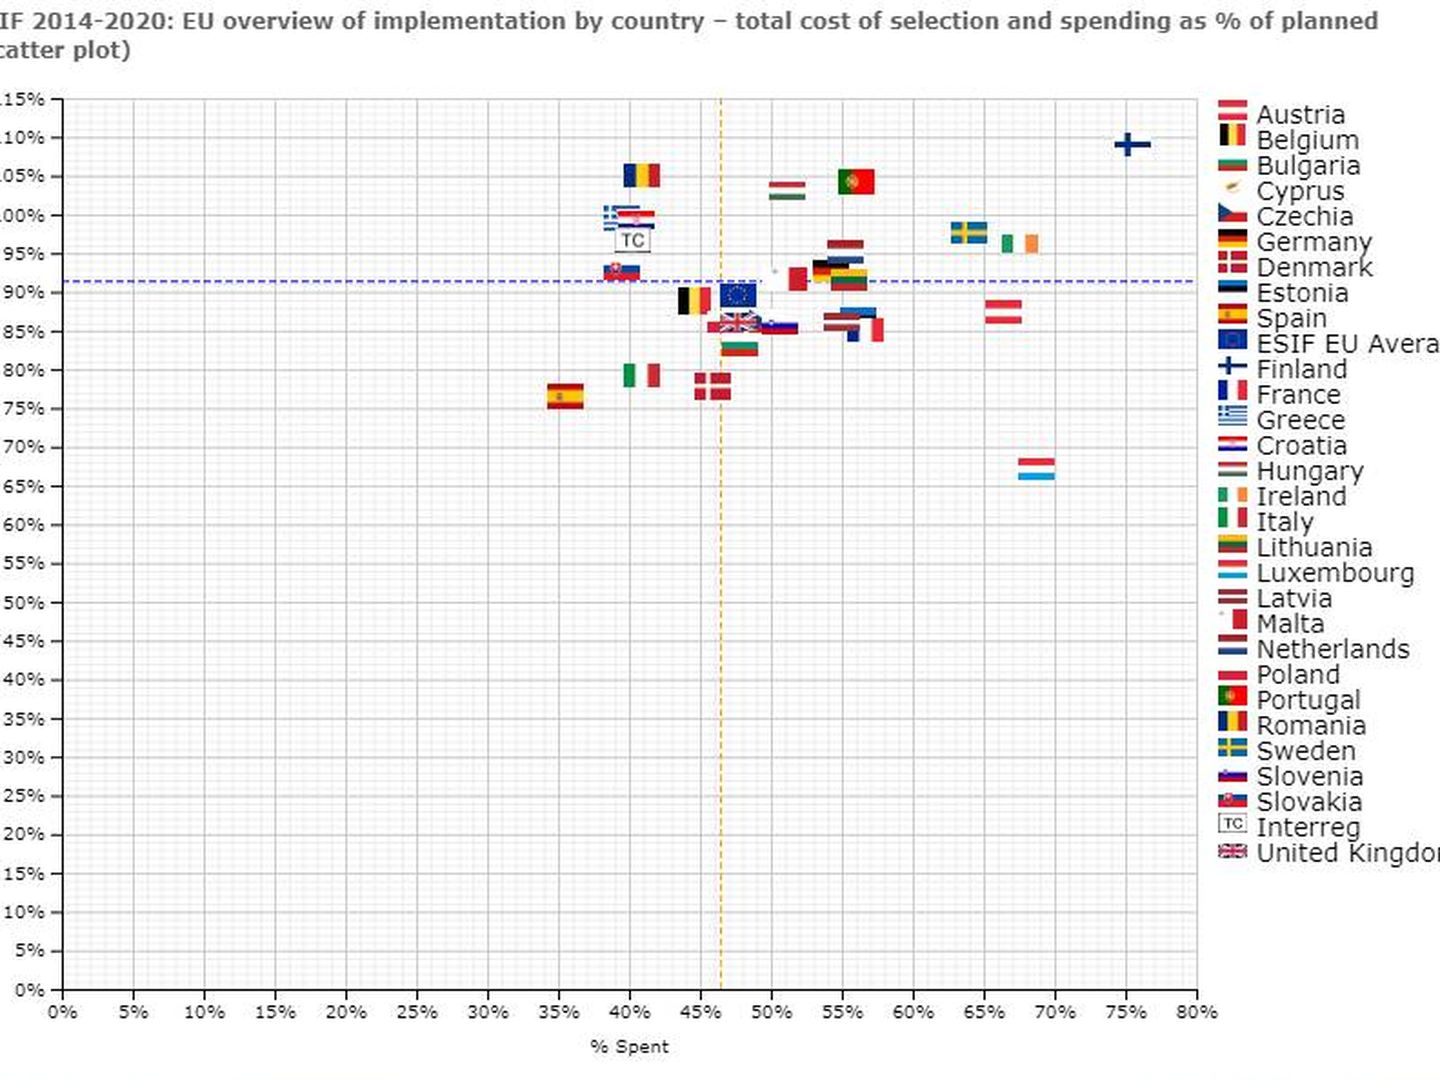 Fondos EIE 2014-2020: resumen de la UE de la implementación por país. Fuente: CE.